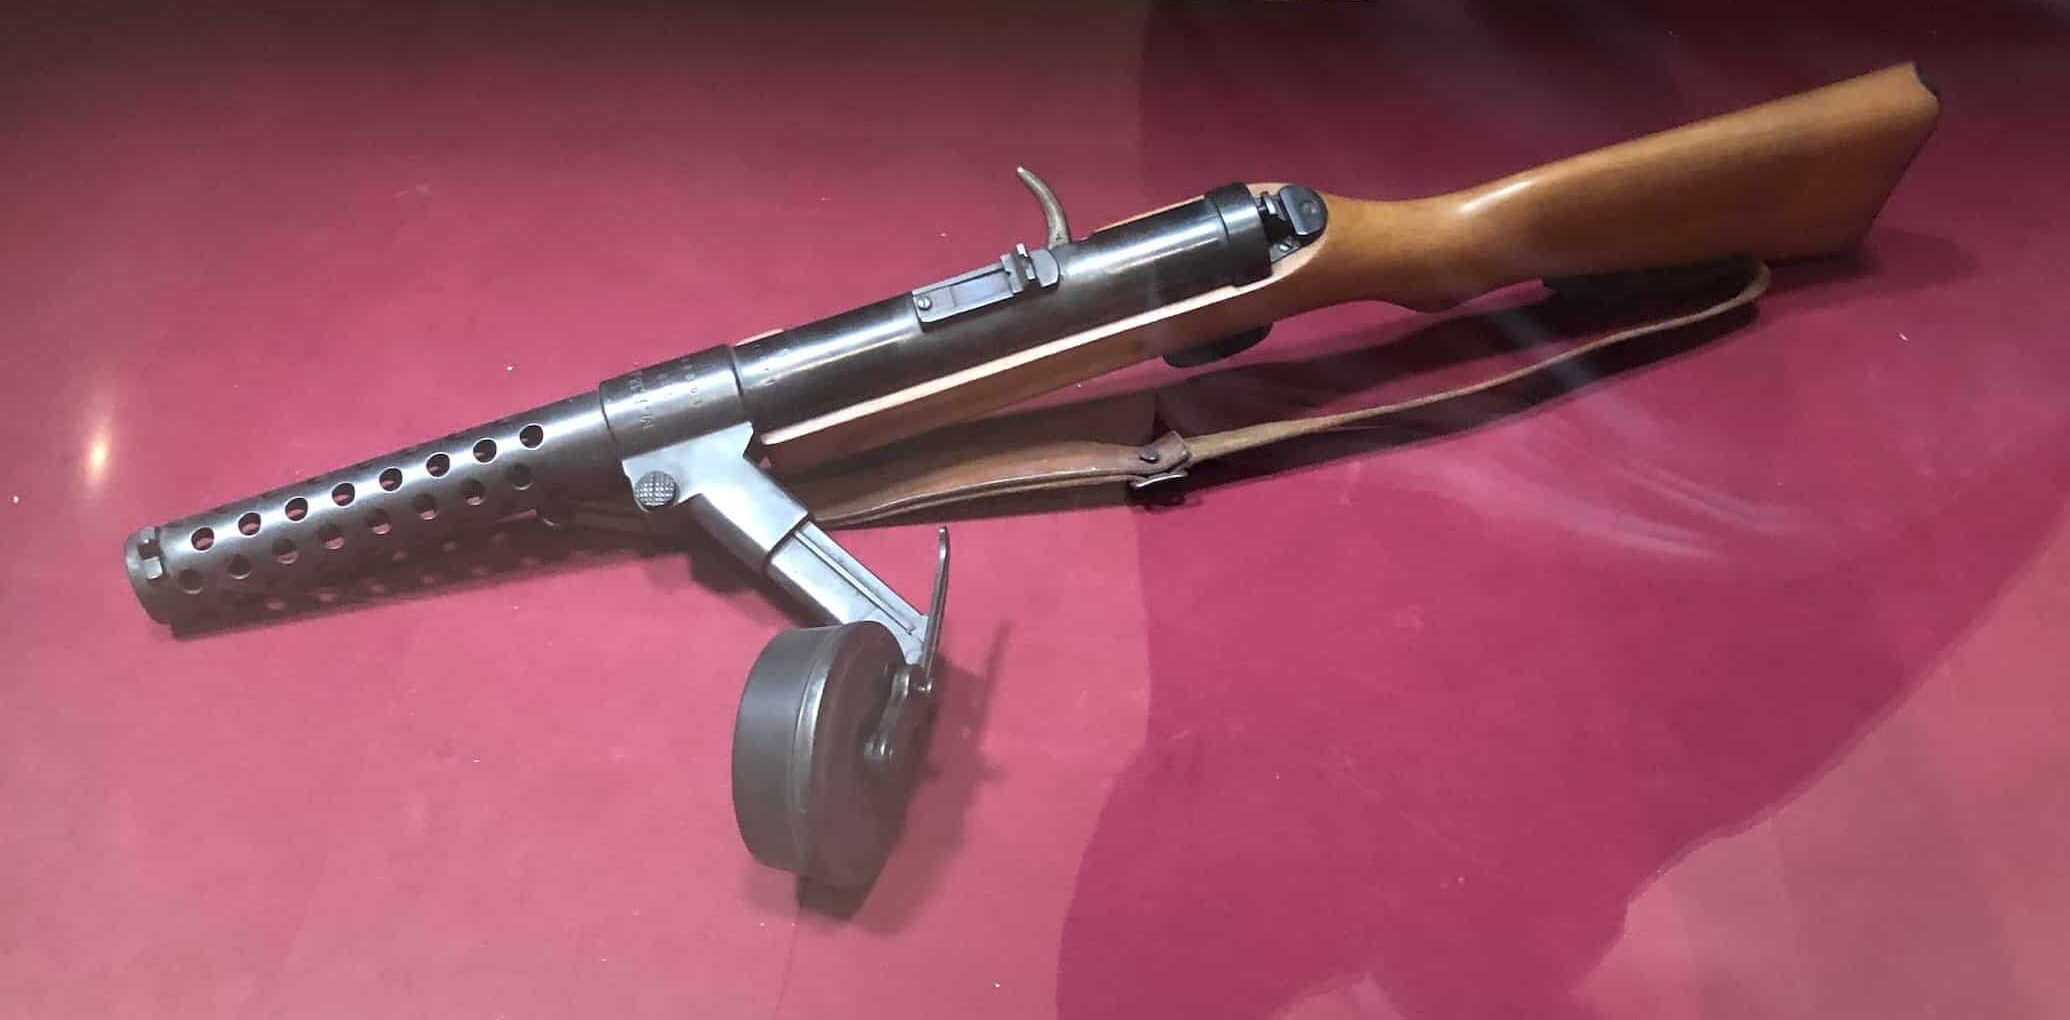 Machine pistol belonging to Fevzi Çakmak